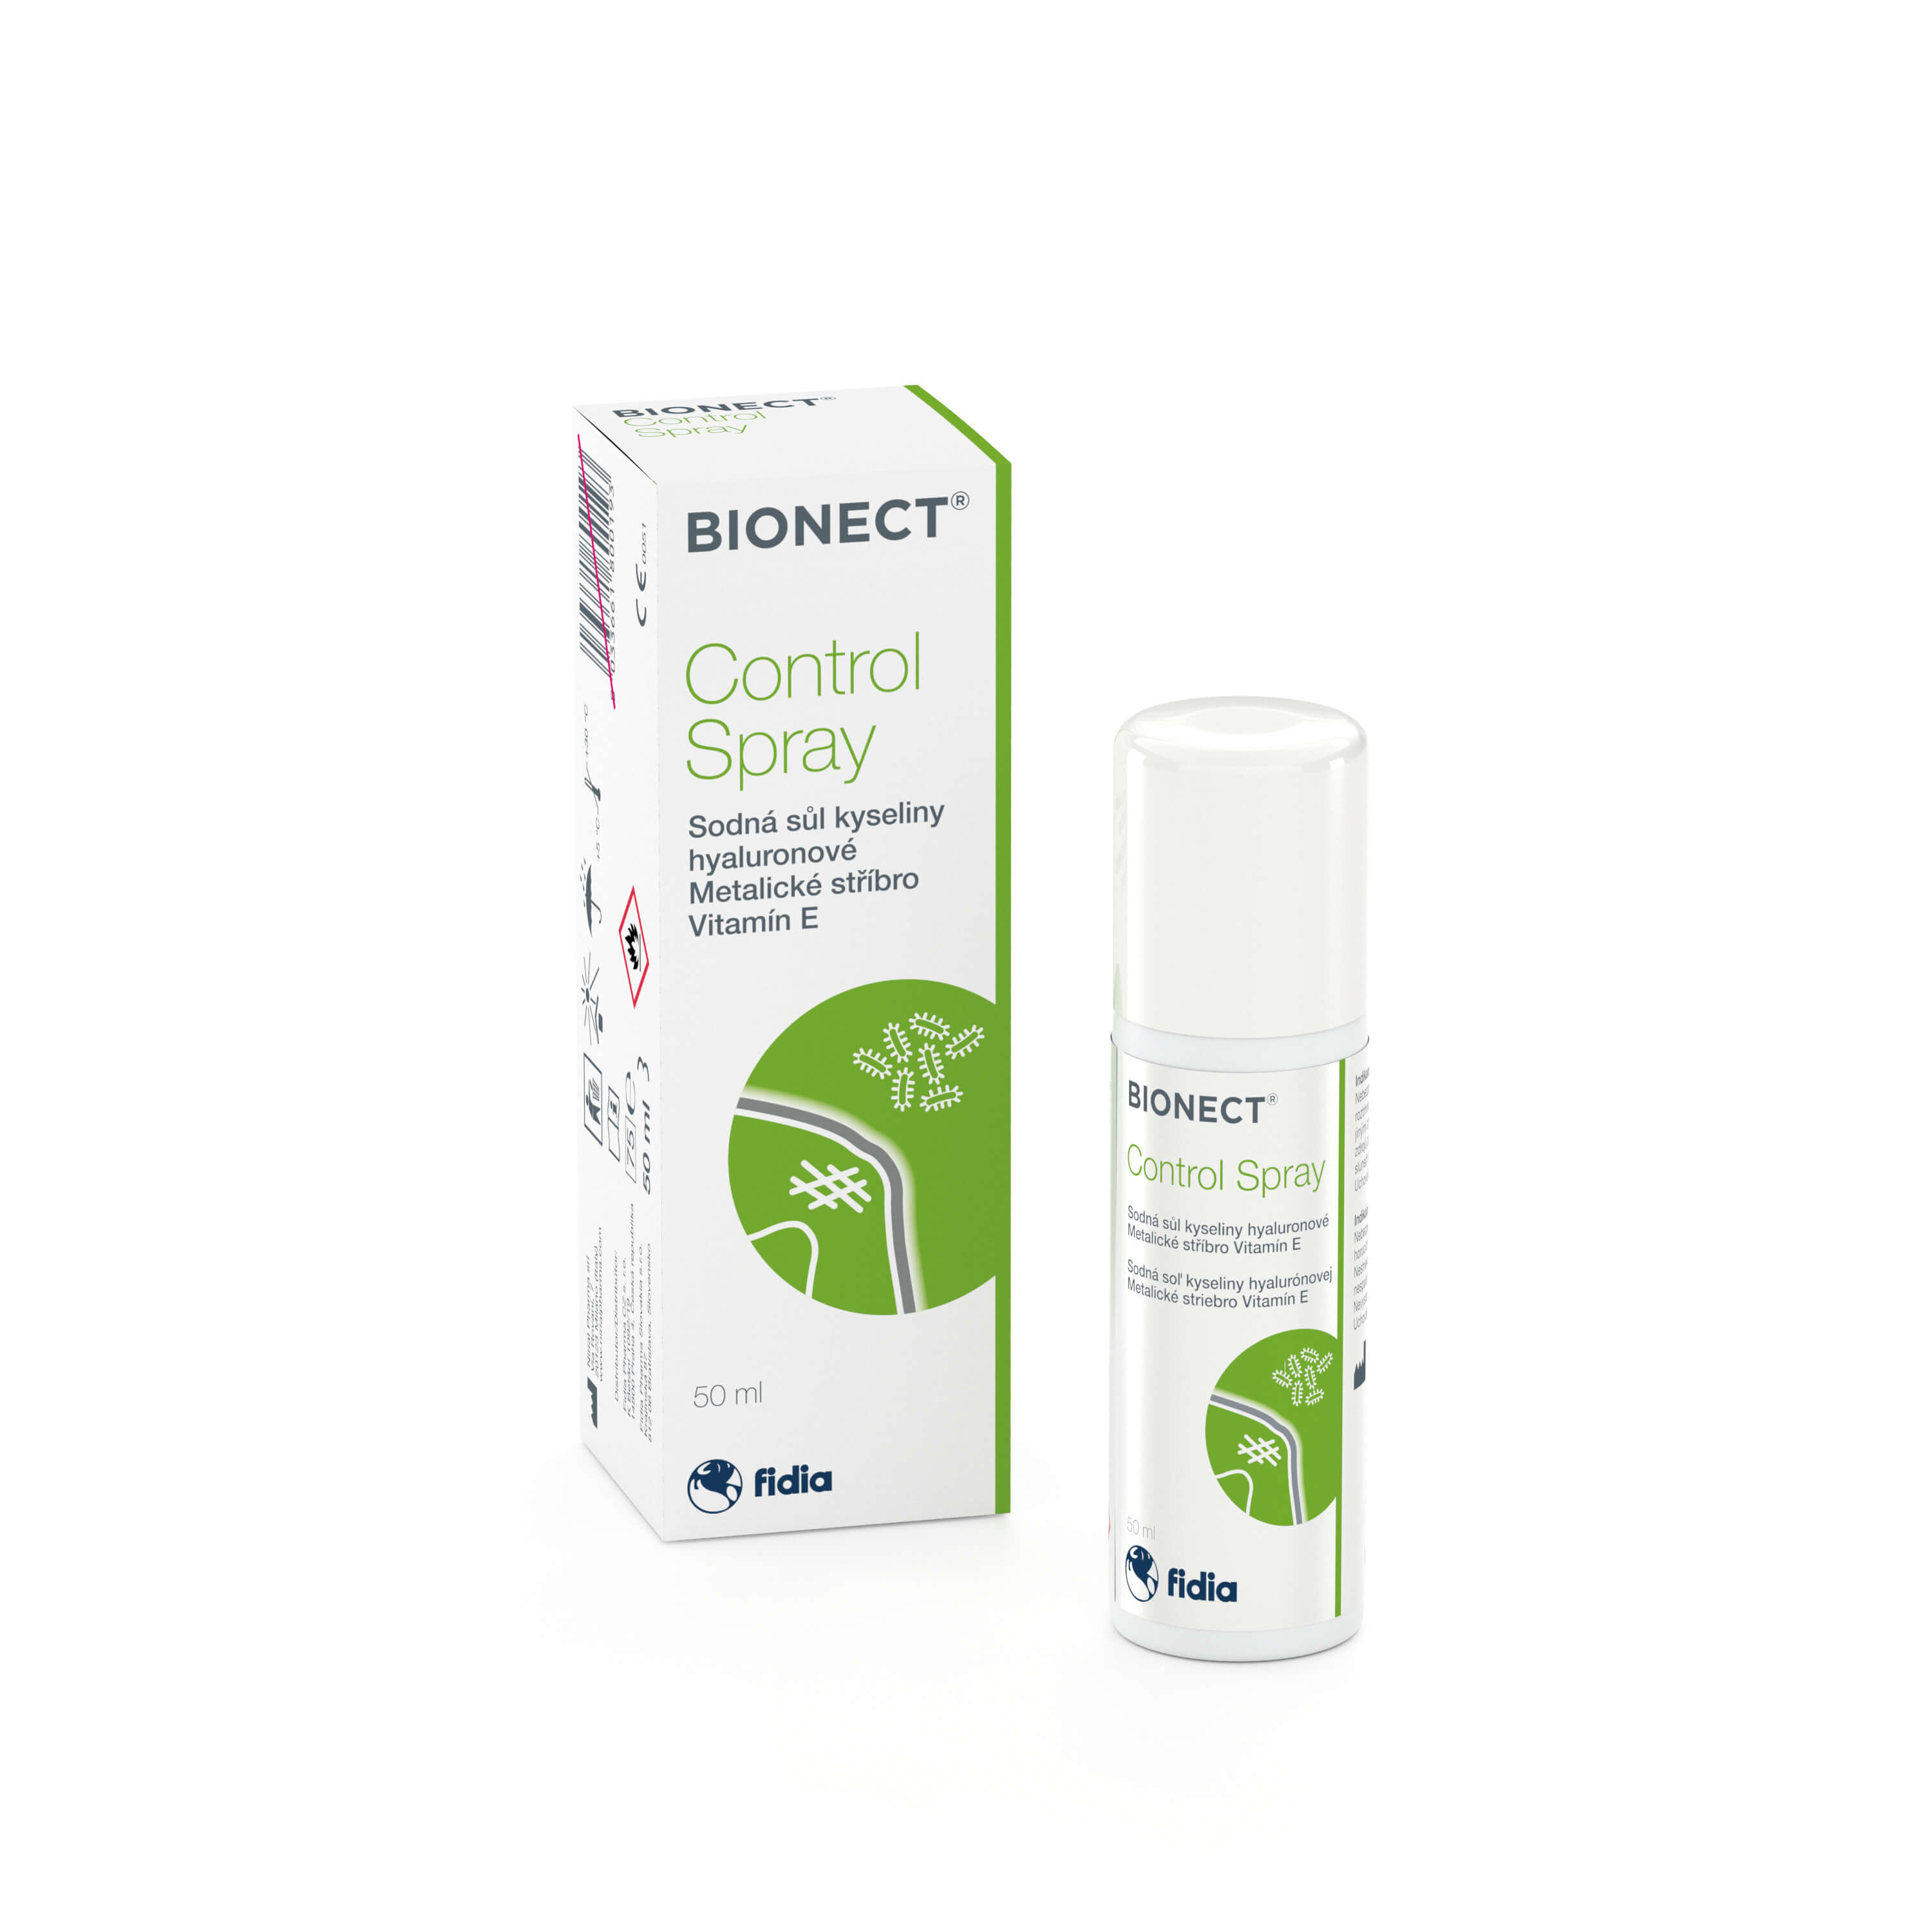 Bionect® Control Spray 50ml